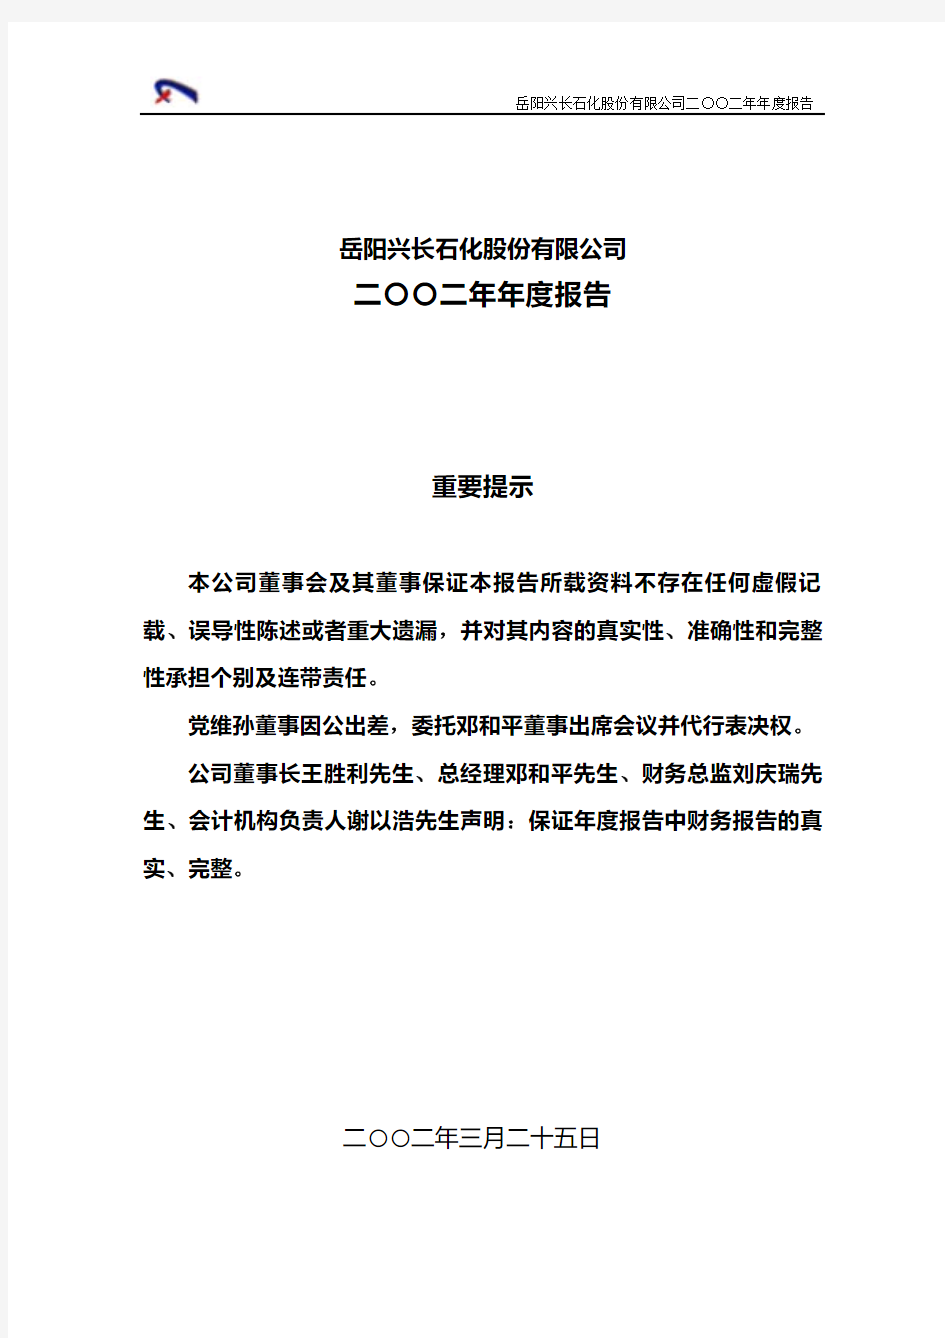 岳阳兴长石化股份有限公司二〇〇二年年度报告